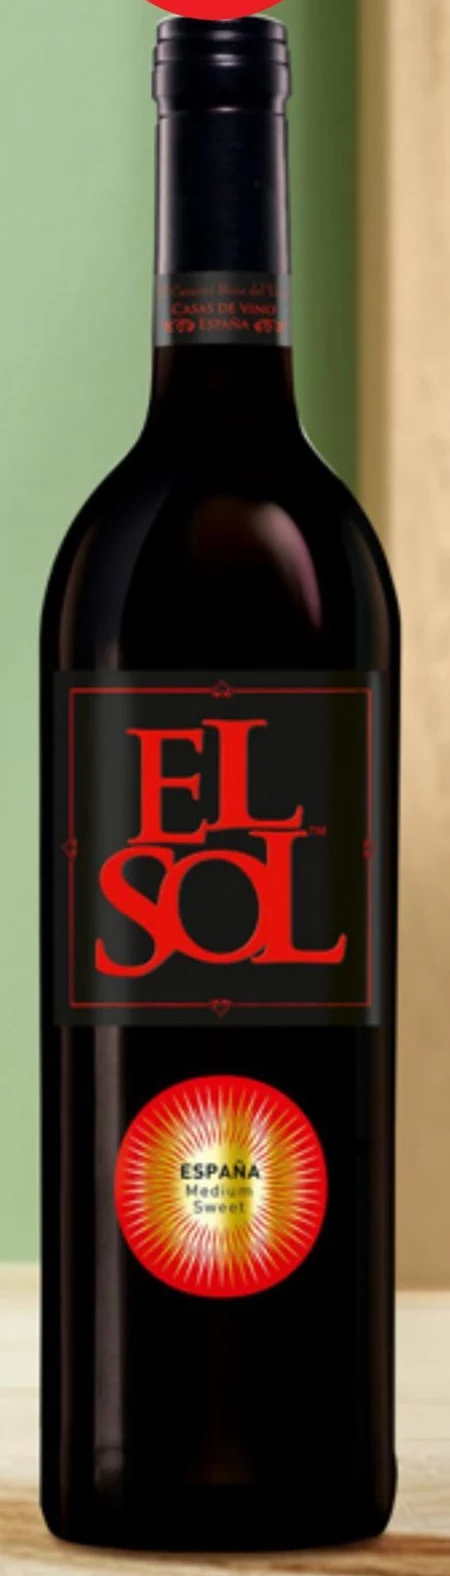 Wino El Sol